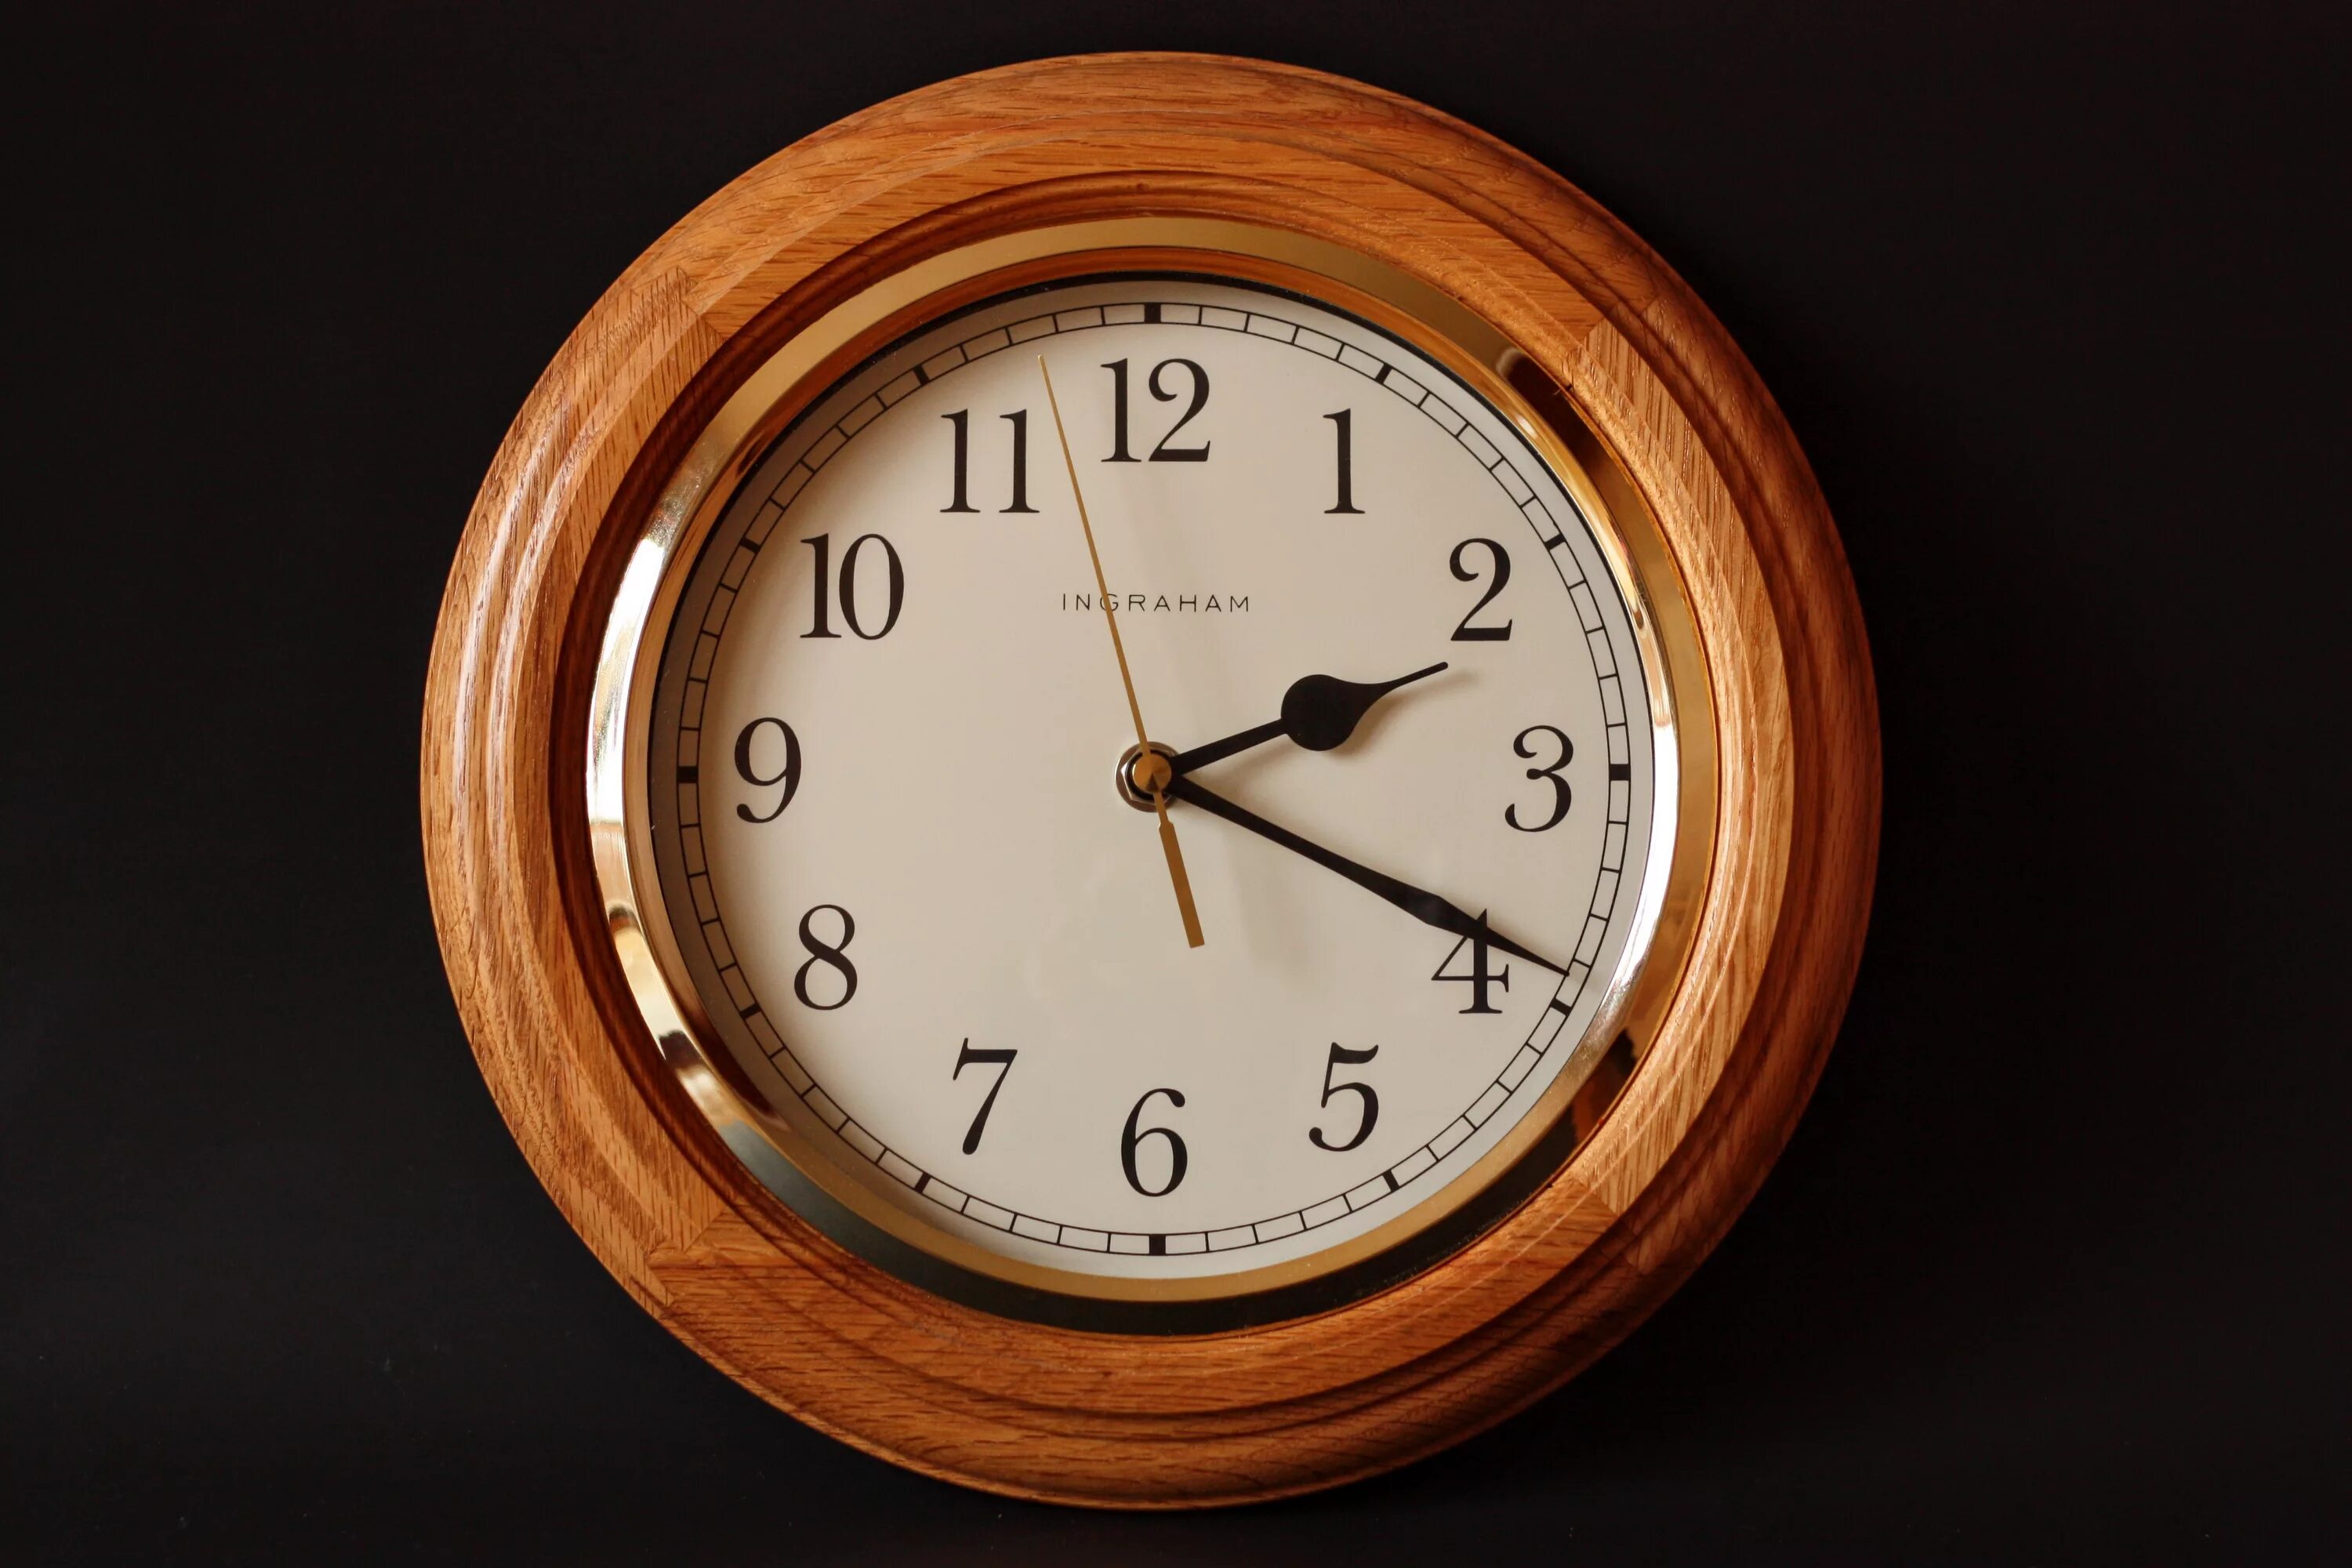 Westminster Chime часы Quartz. Часы механические настенные. Часы настенные деревянные. Часы классика. Время 14 51